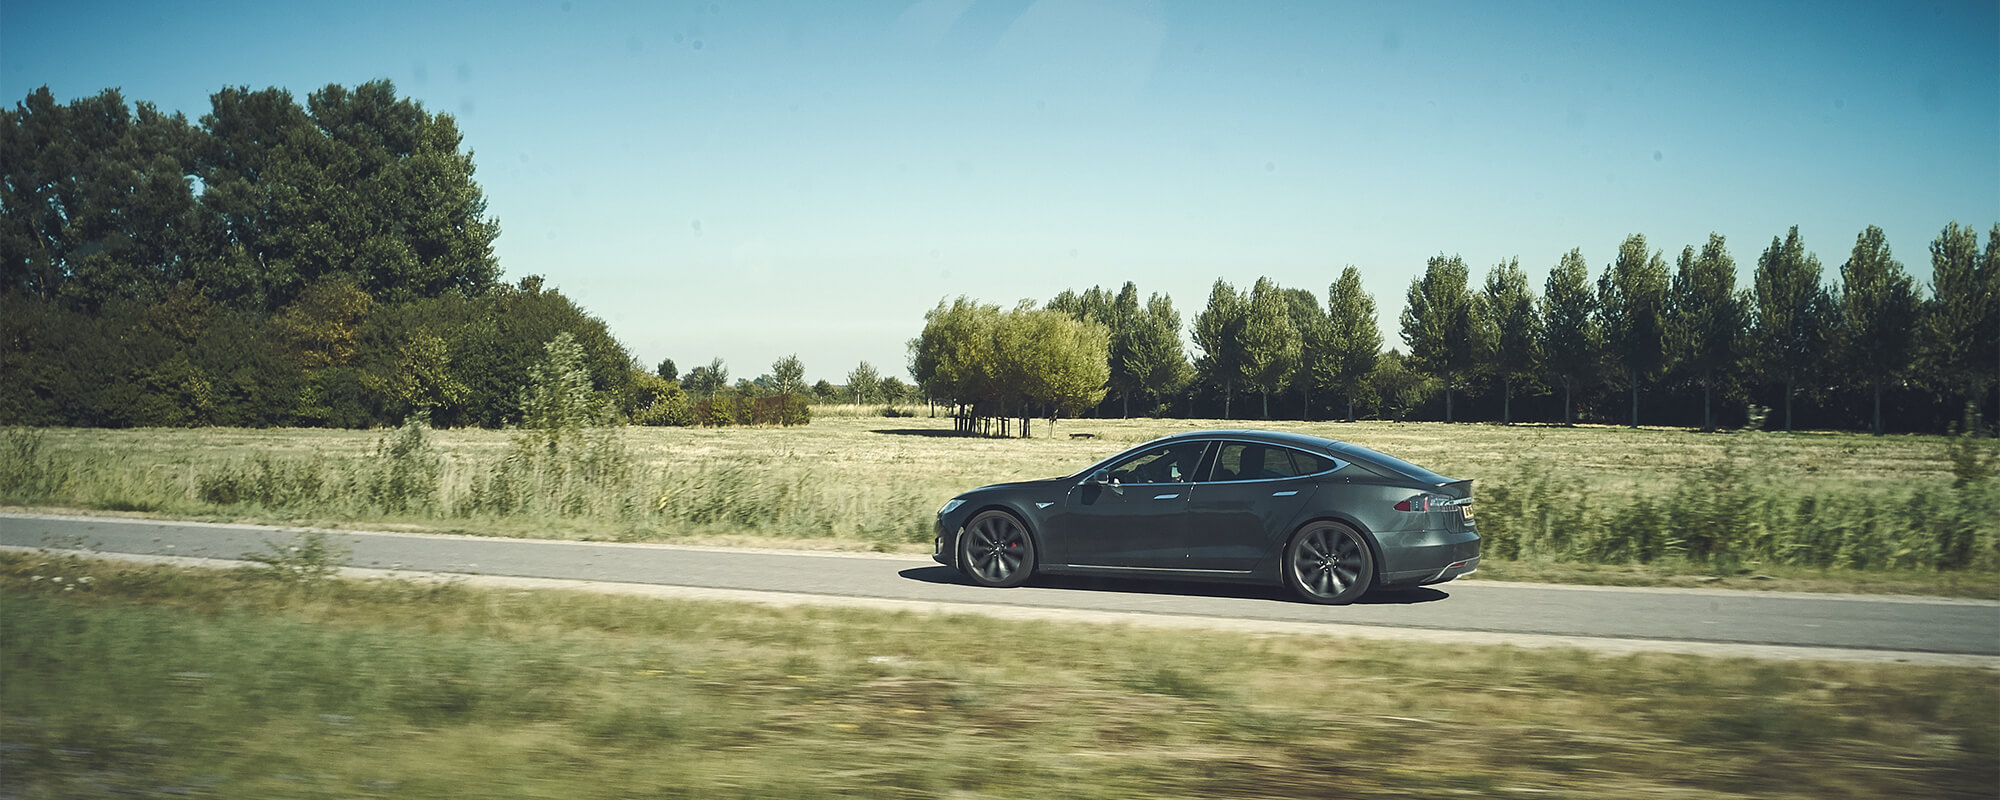 Model S Driving in Field